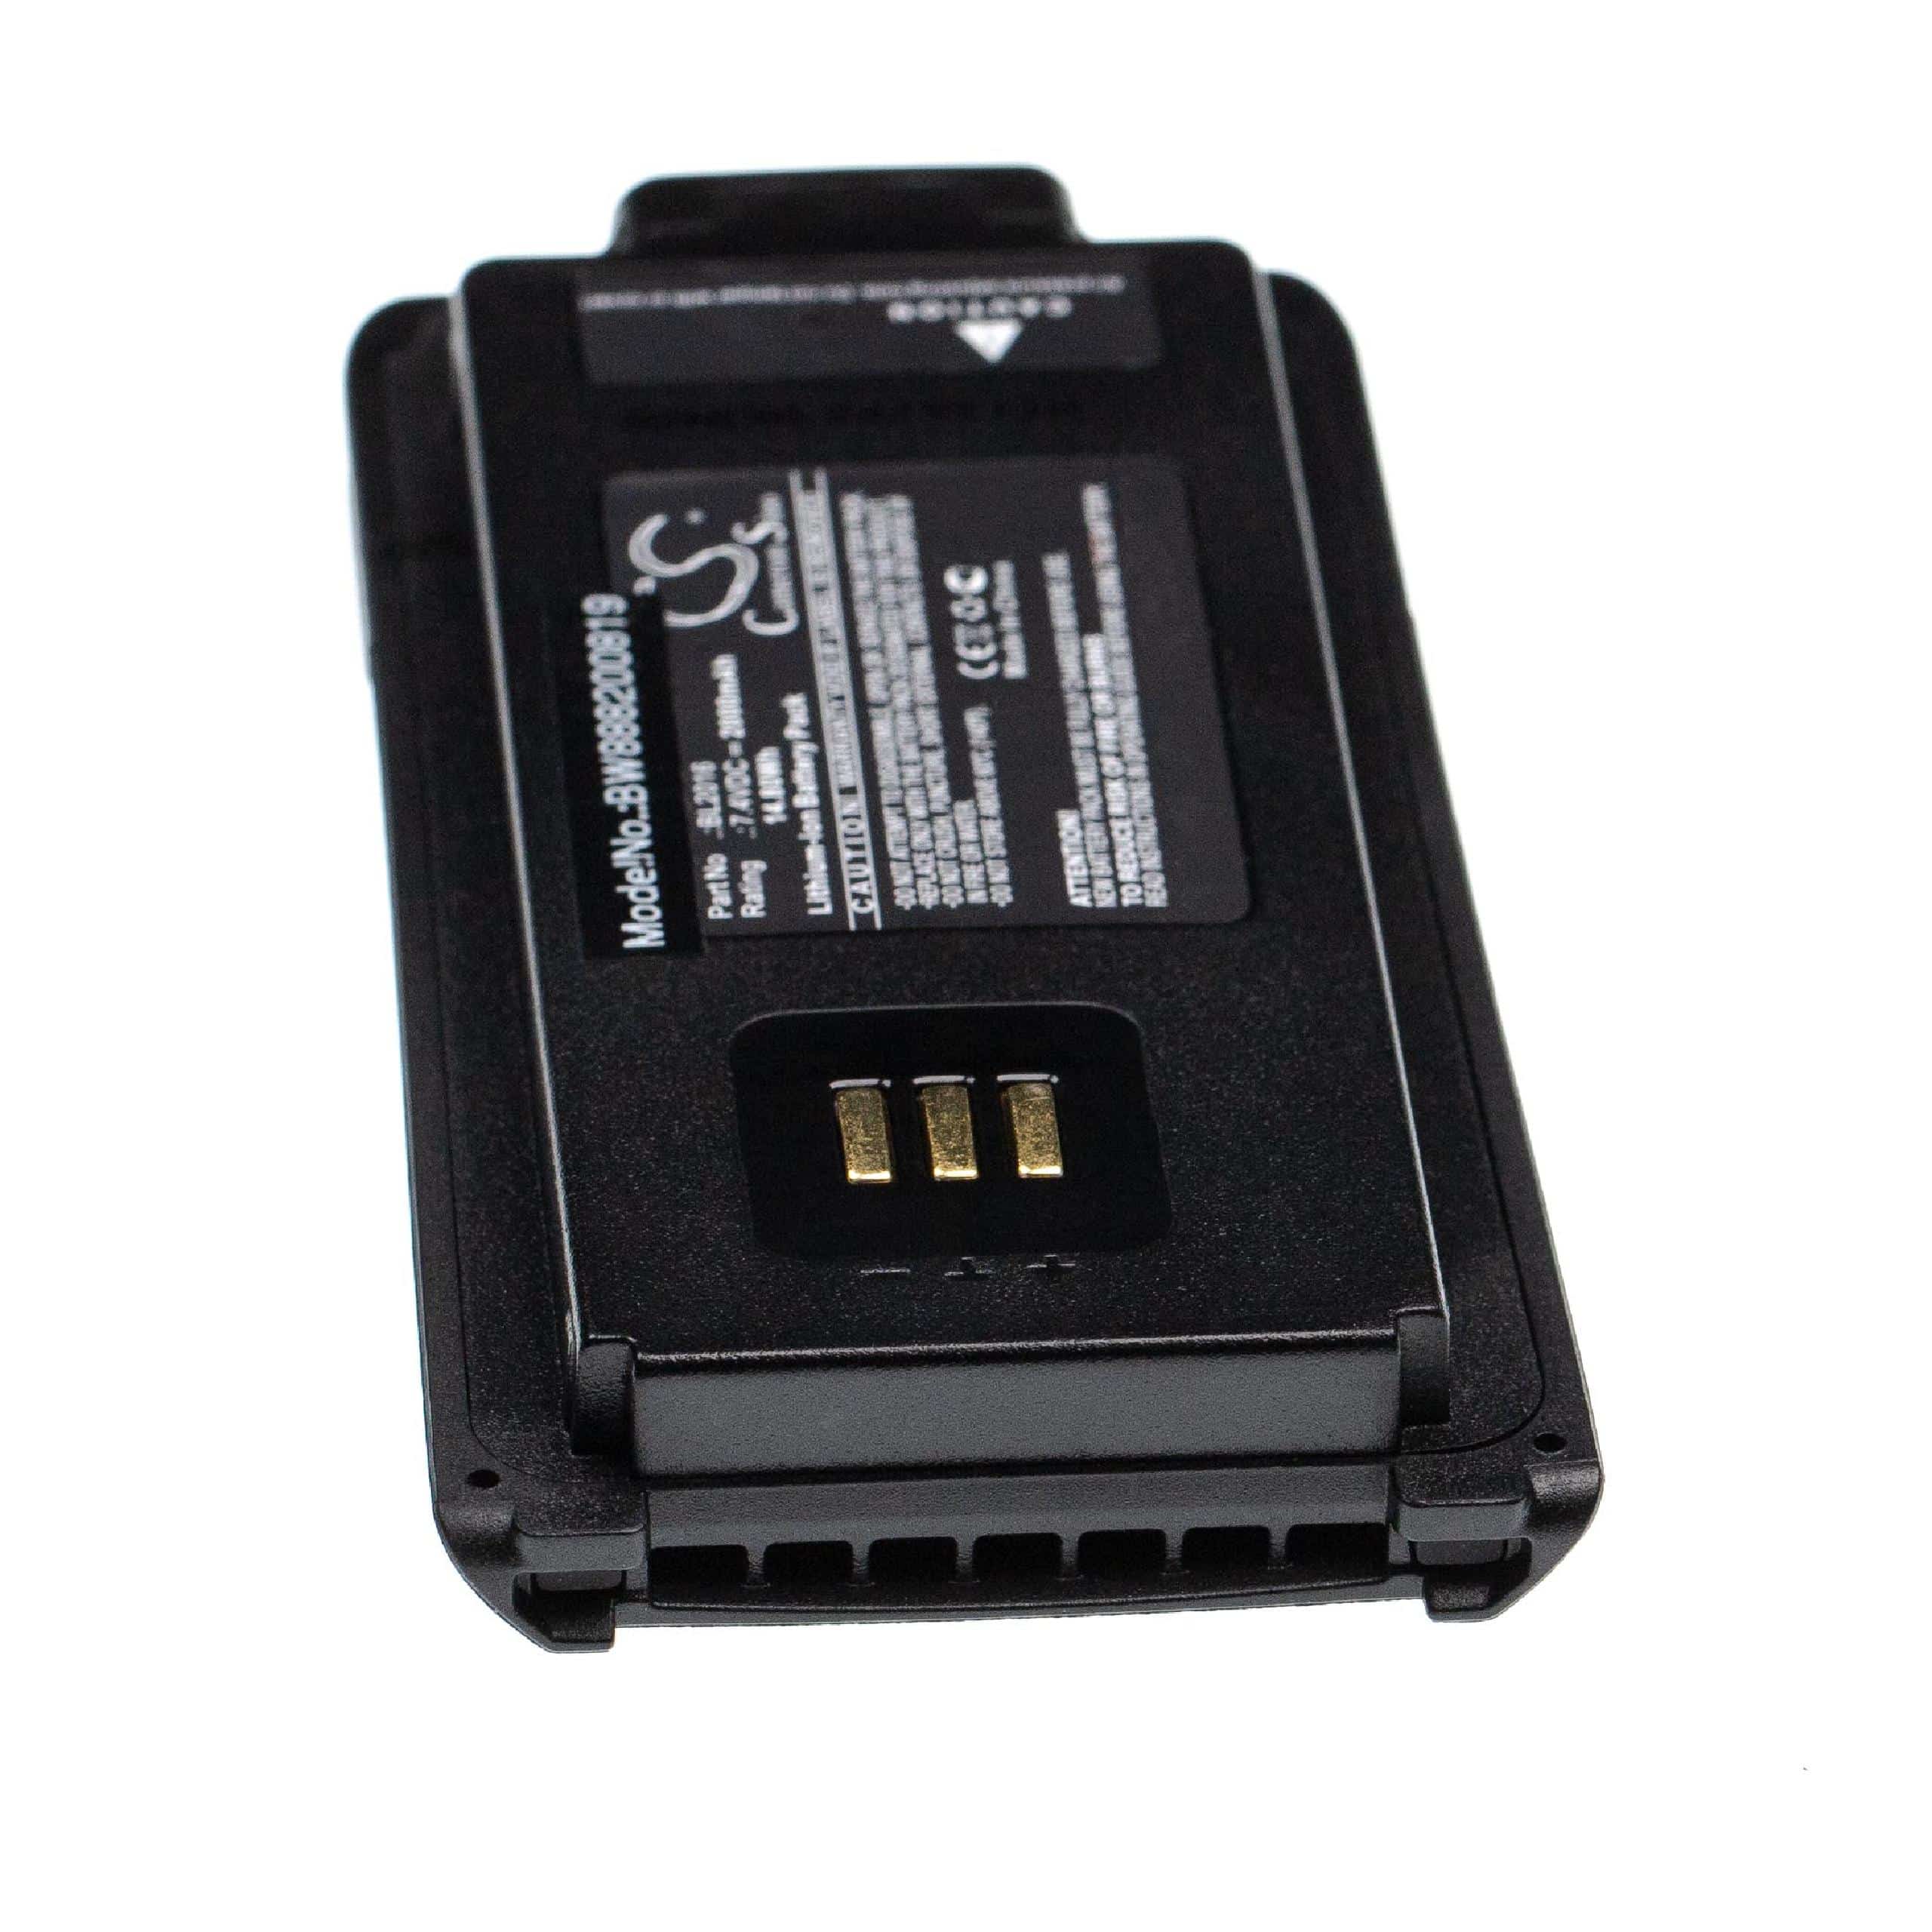 Batería reemplaza Hytera BL2016, BL2015, BL2509 para radio, walkie-talkie Hytera - 2000 mAh 7,4 V Li-Ion